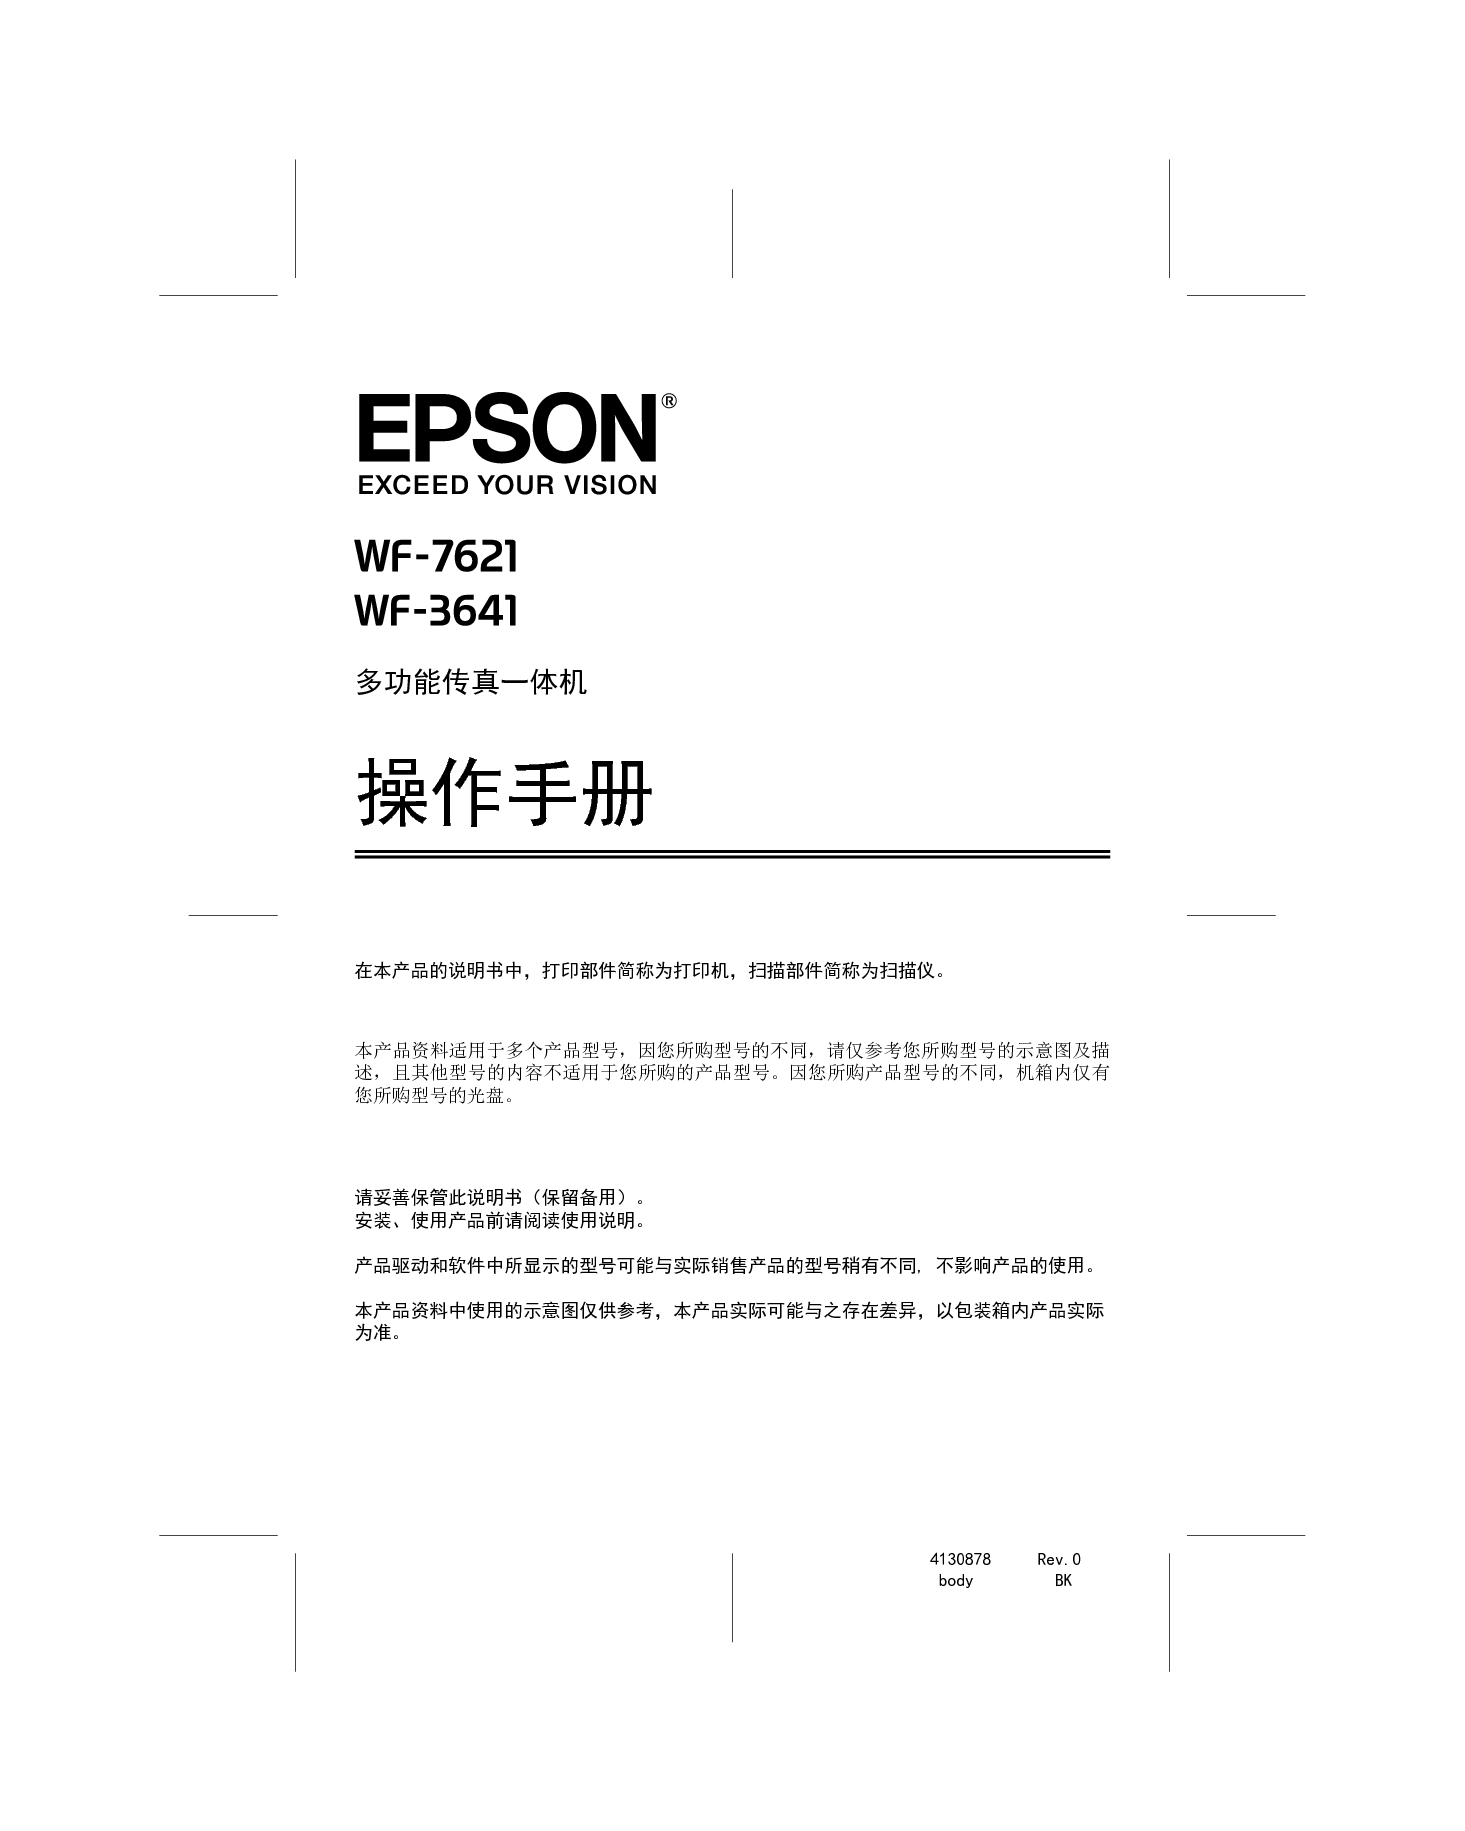 爱普生 Epson WF-3641 操作手册 封面